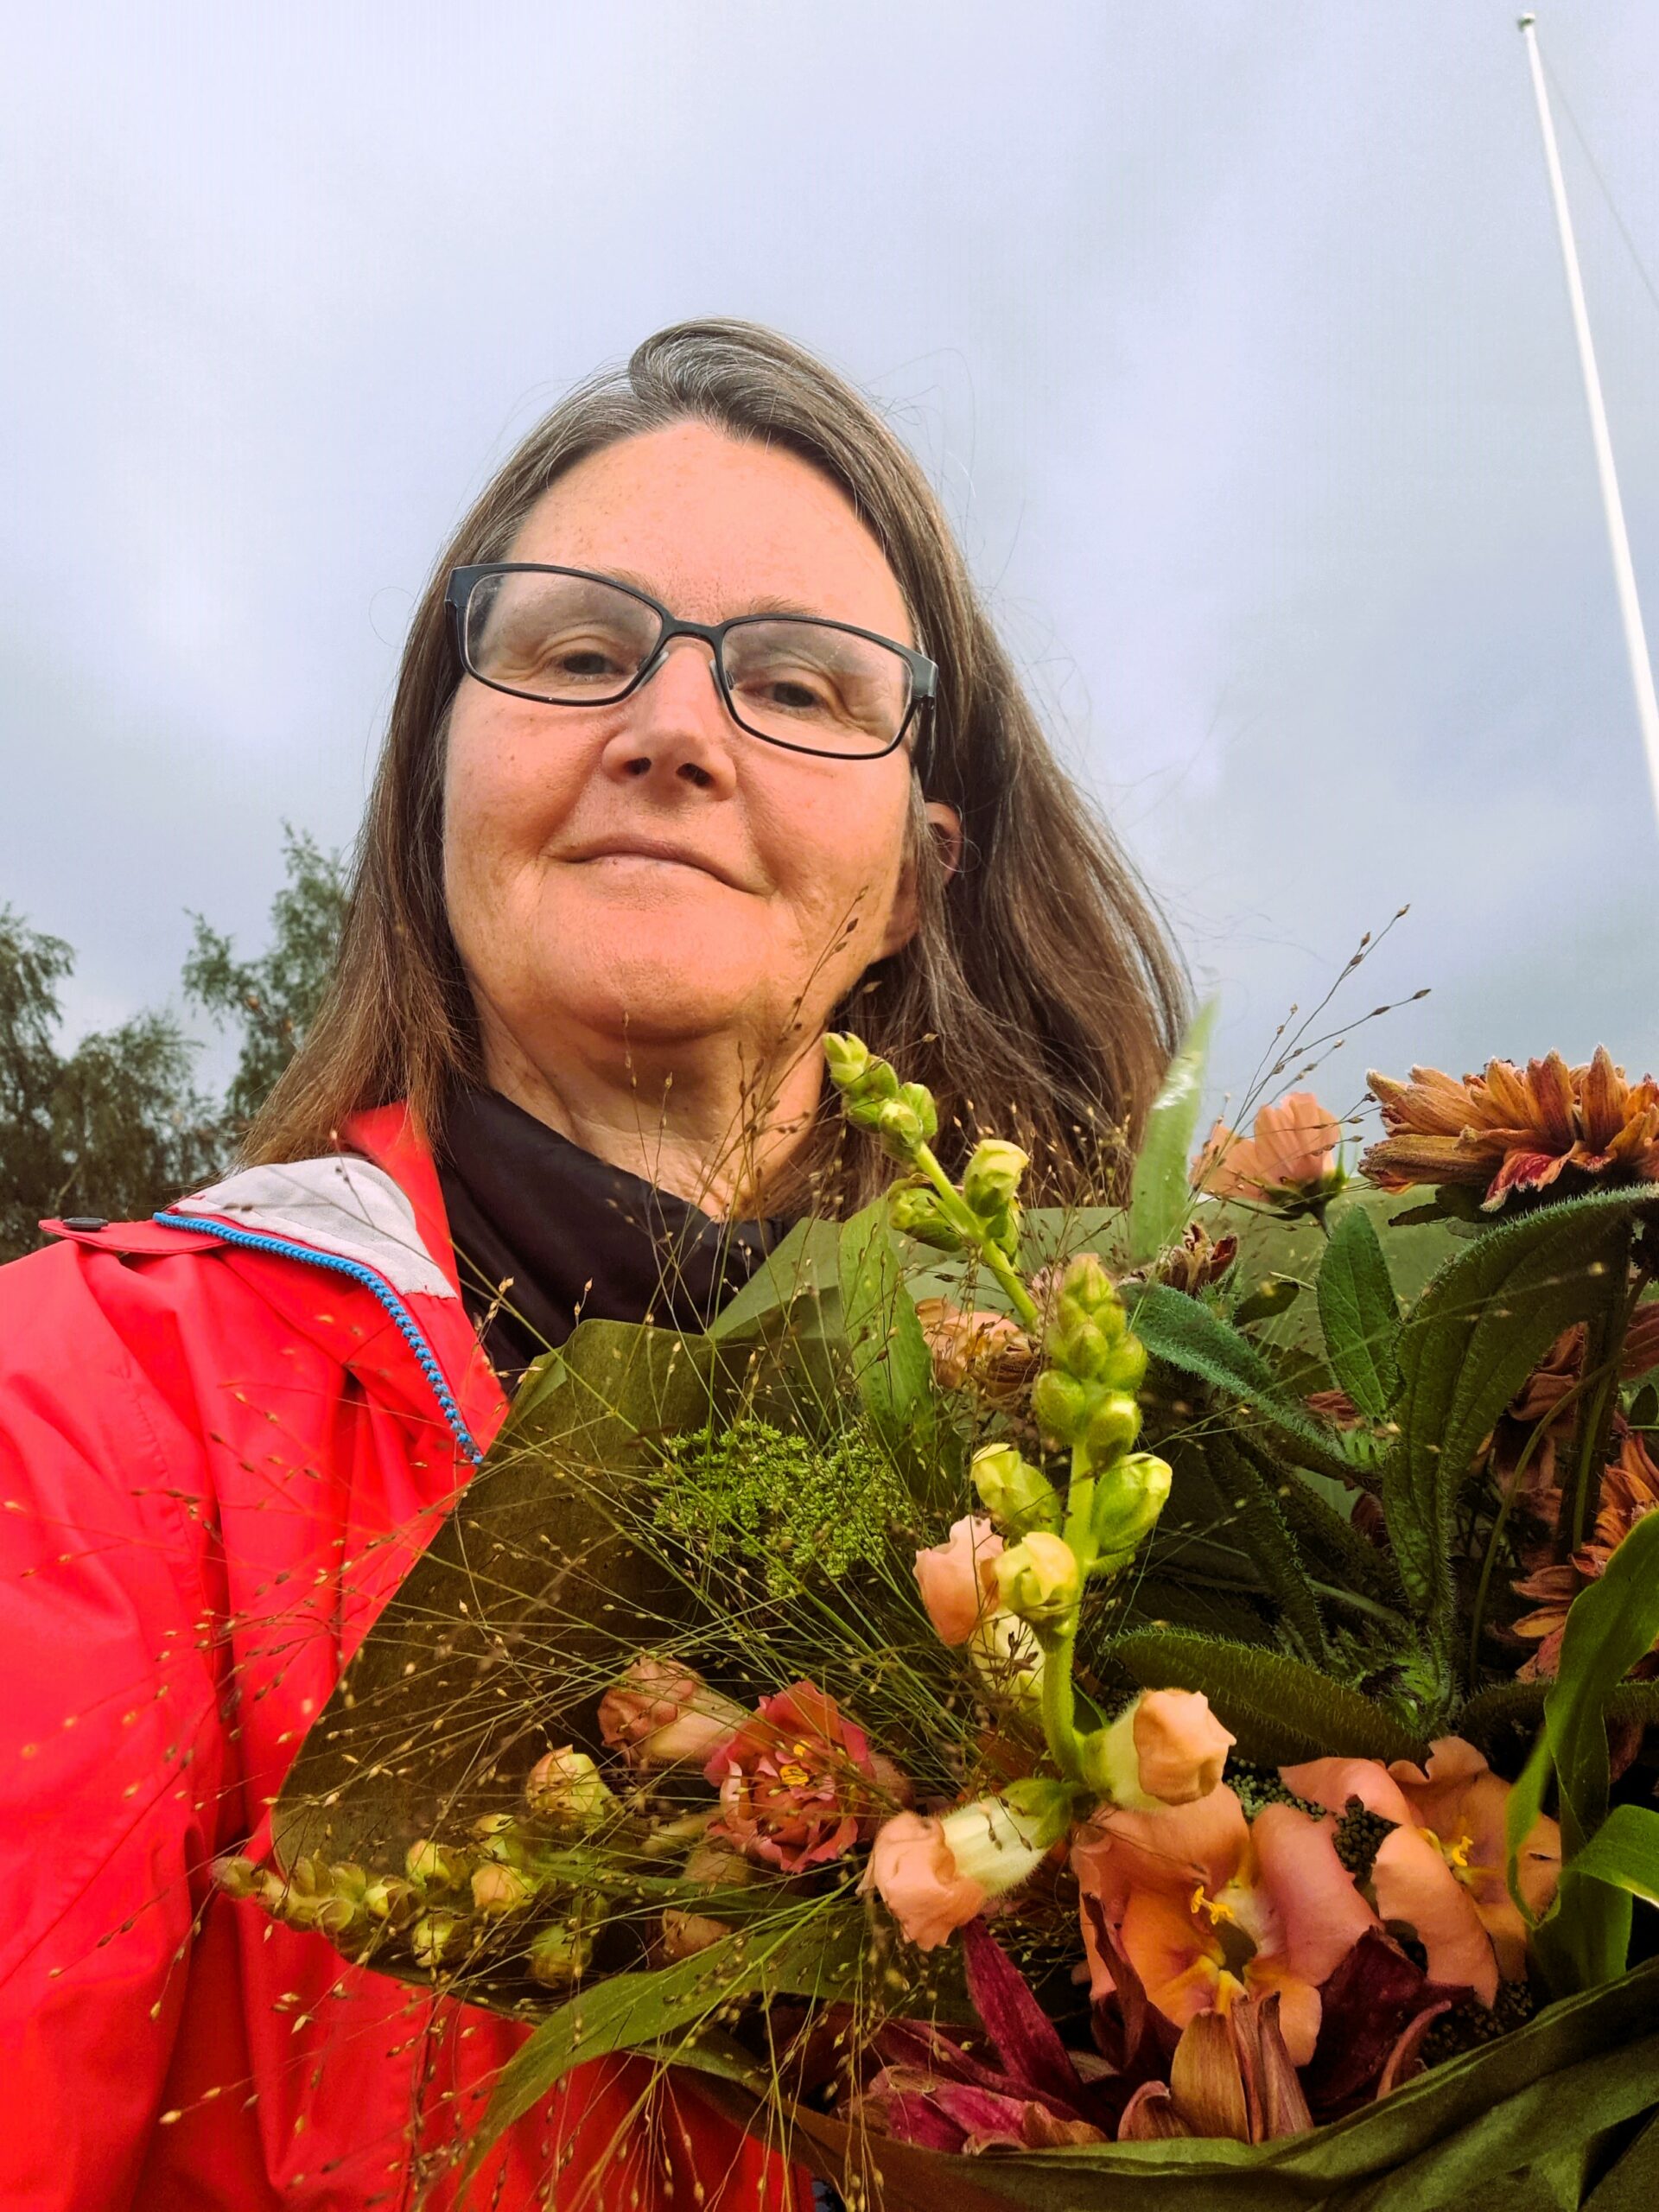 Ledaren för kortkursen Trägård i Jämtland poserar med en vacker blombukett